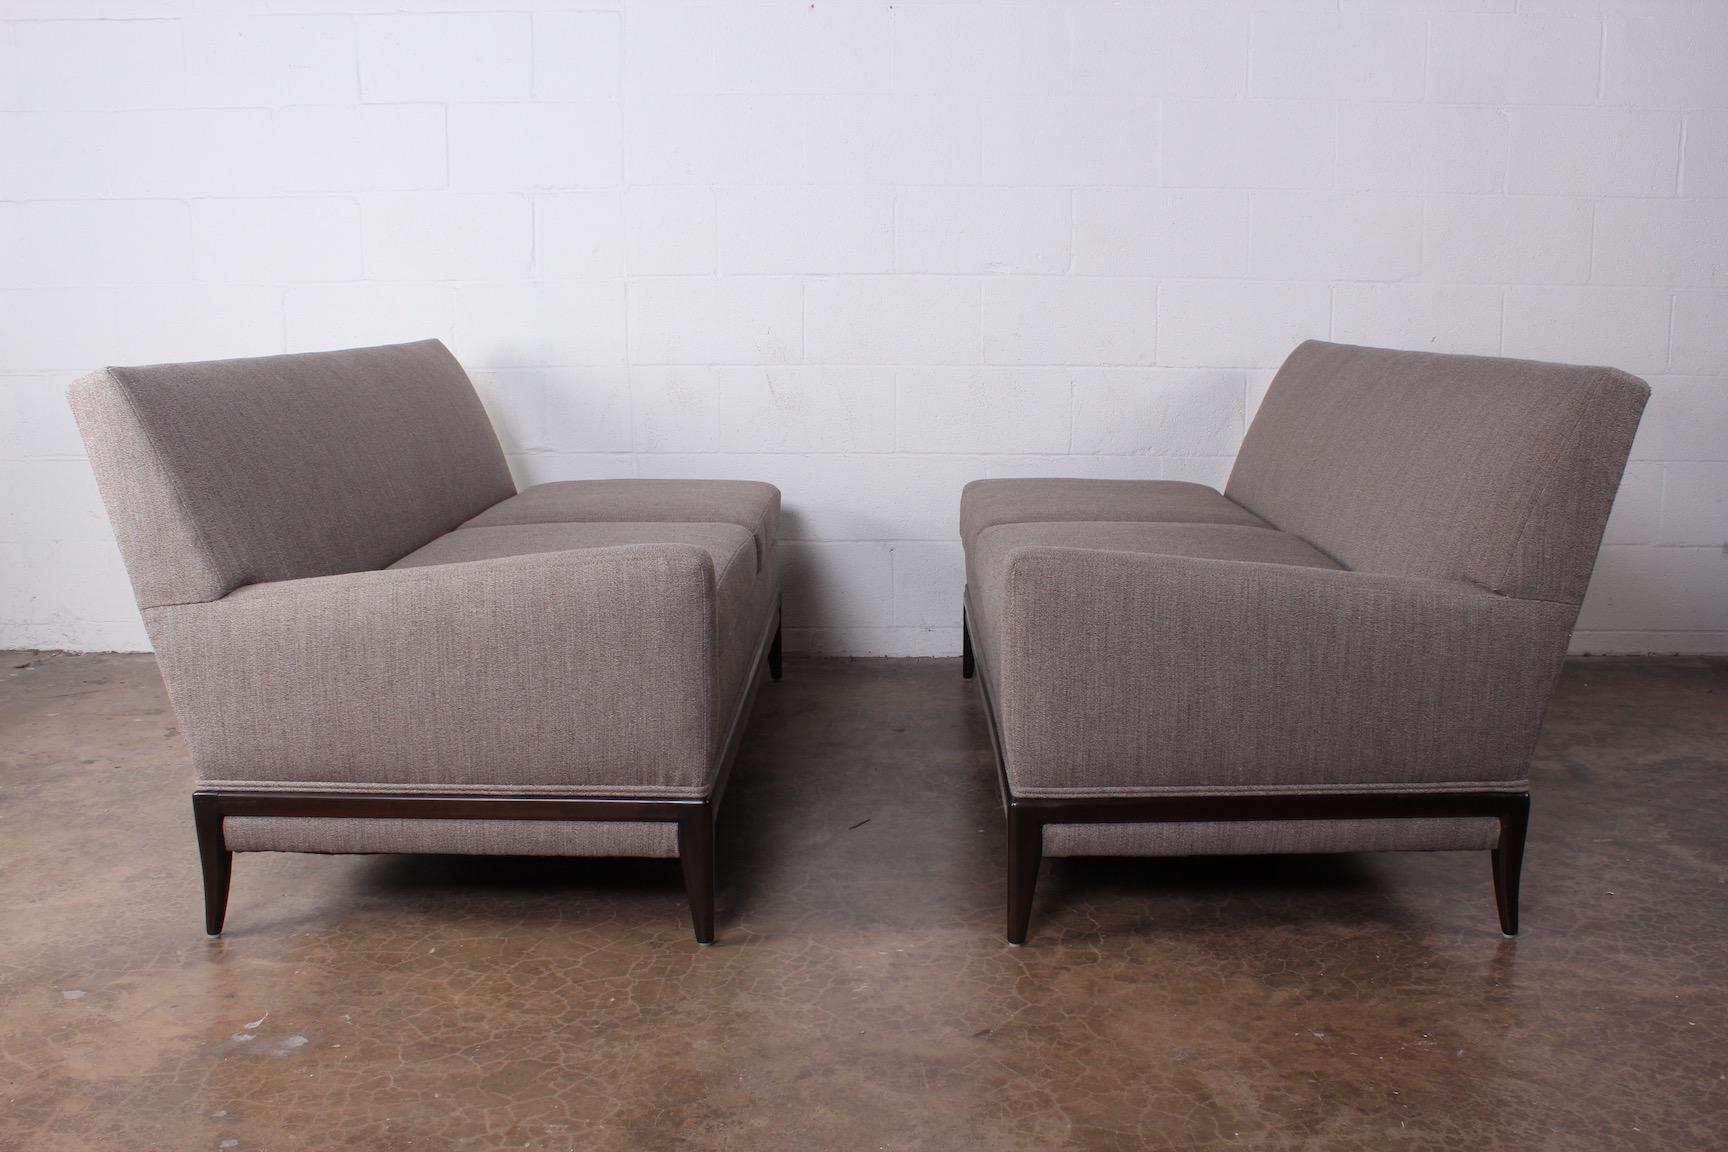 A two piece sofa designed by Tommi Parzinger for Parzinger originals.
Measures: 60 x 32 x 29.75 H each.